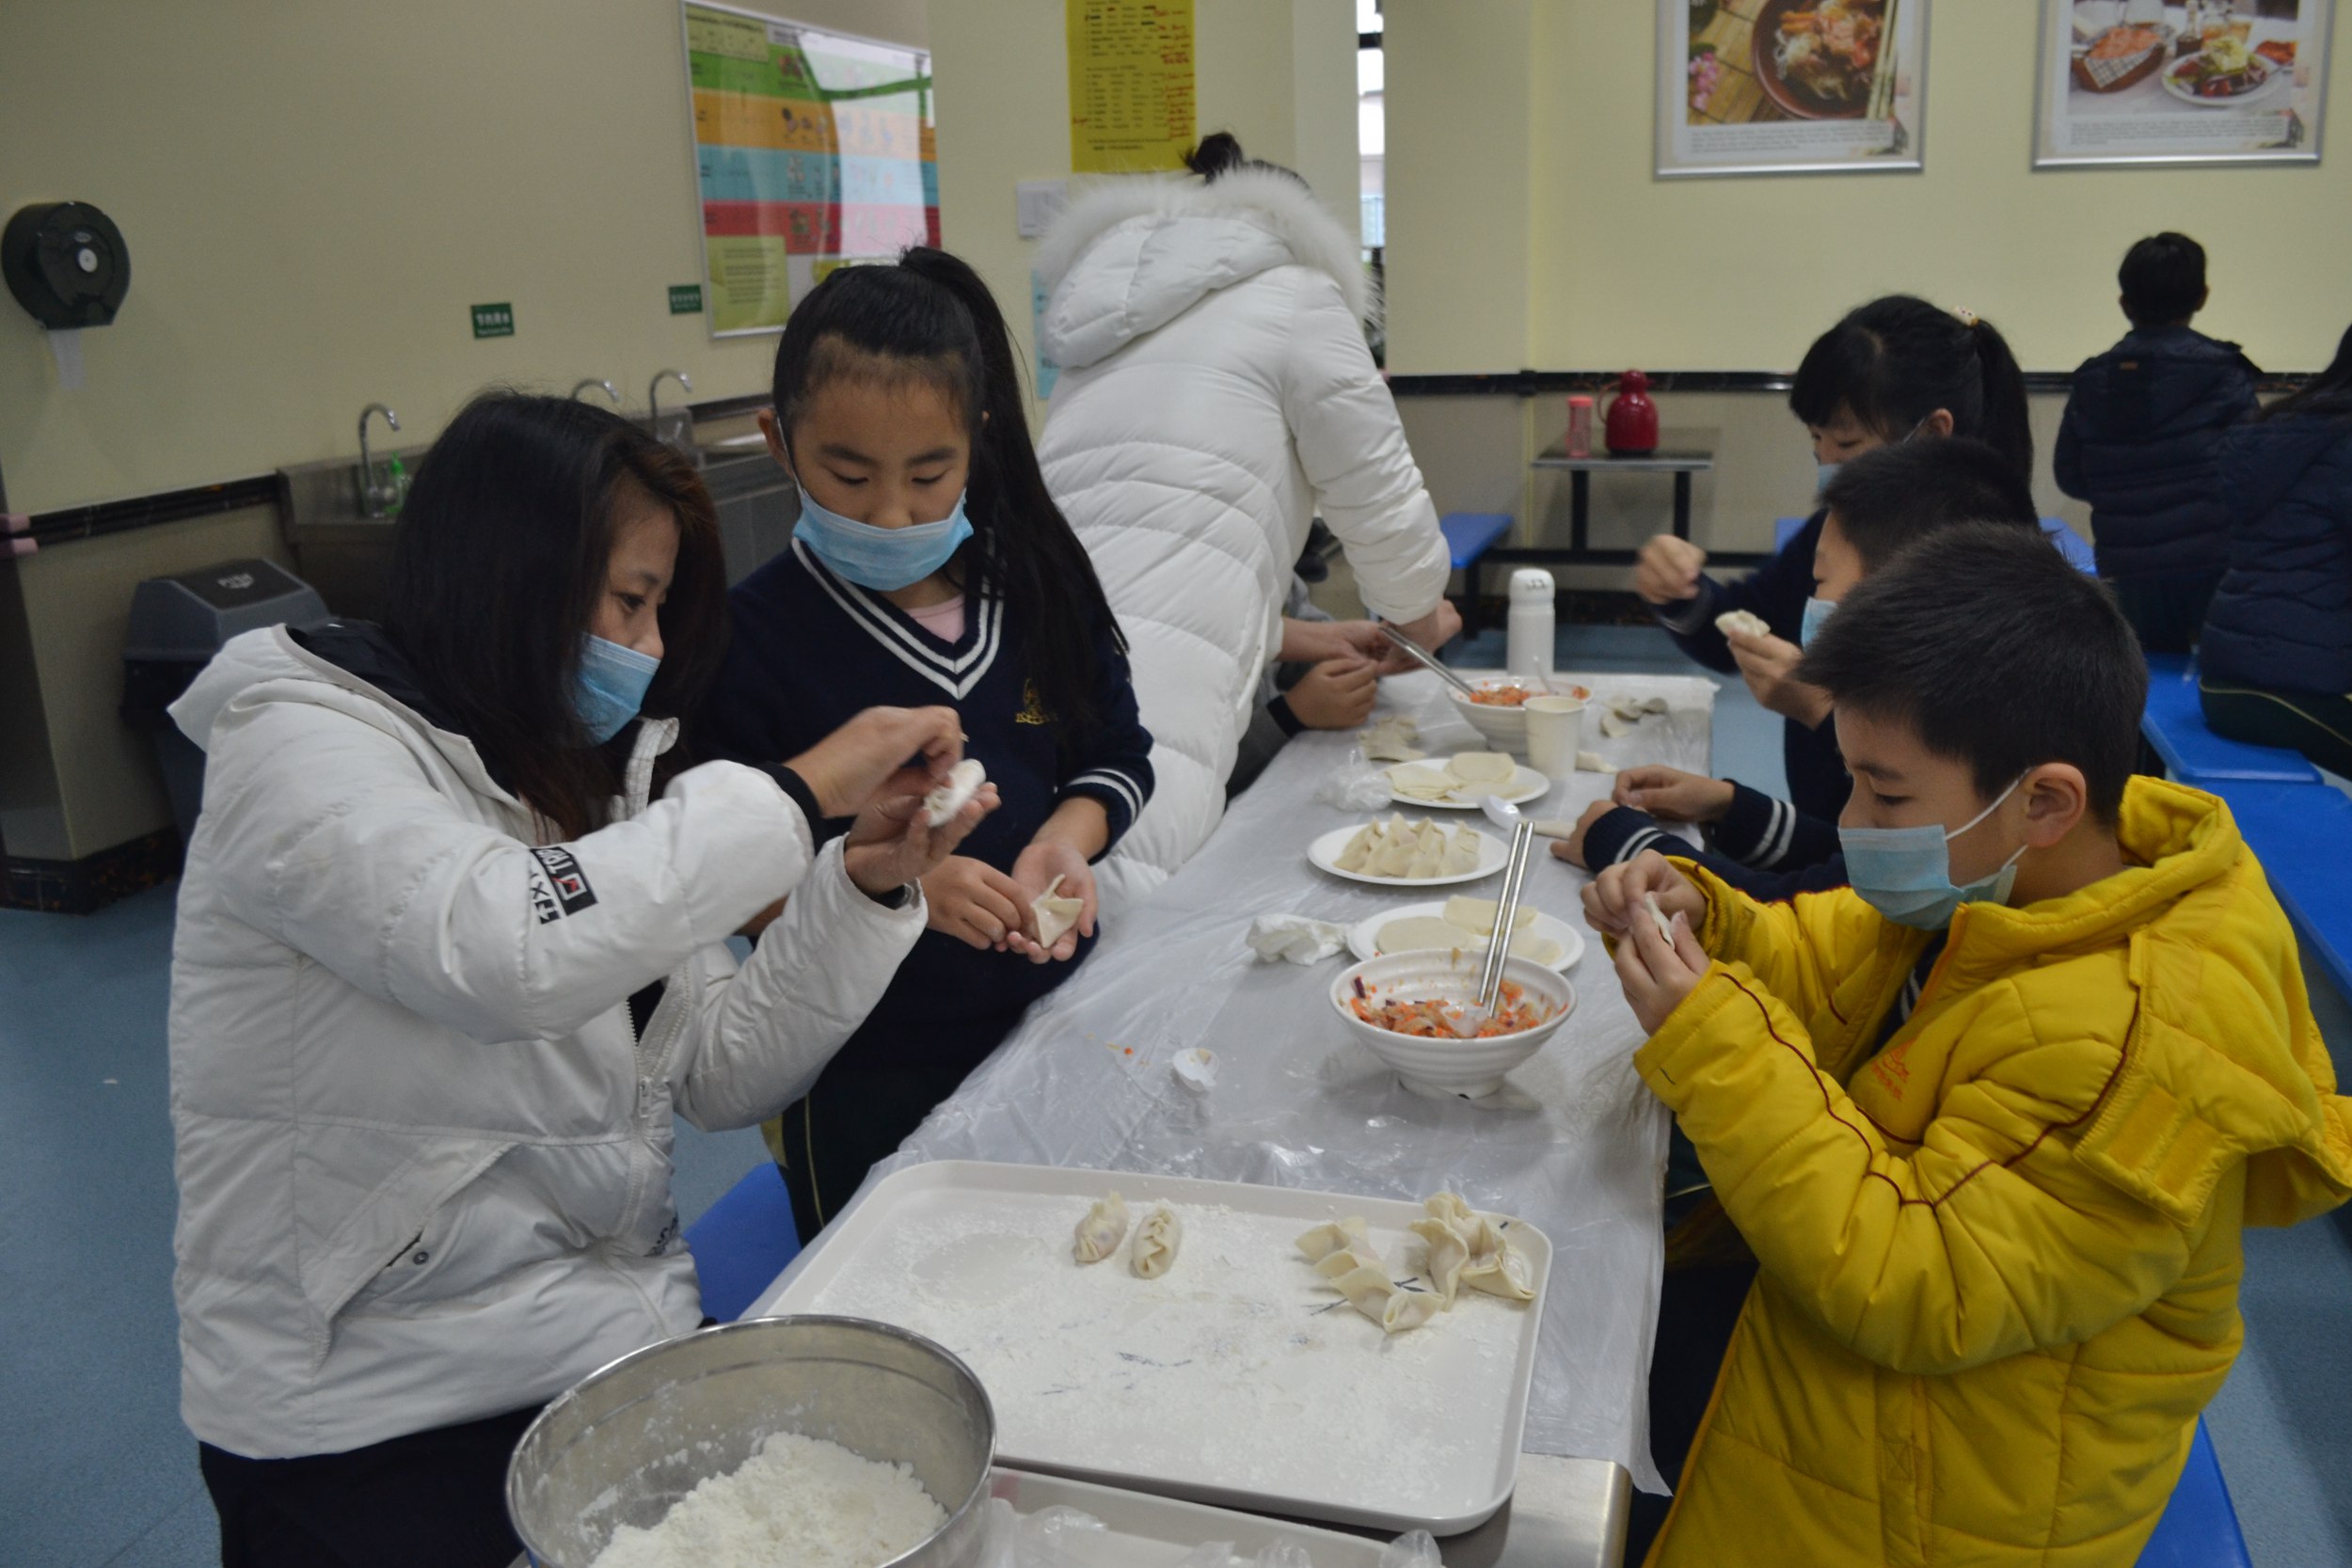 包中国饺子 享团圆之乐 Dumpling Making at the FNS Builds Our Community